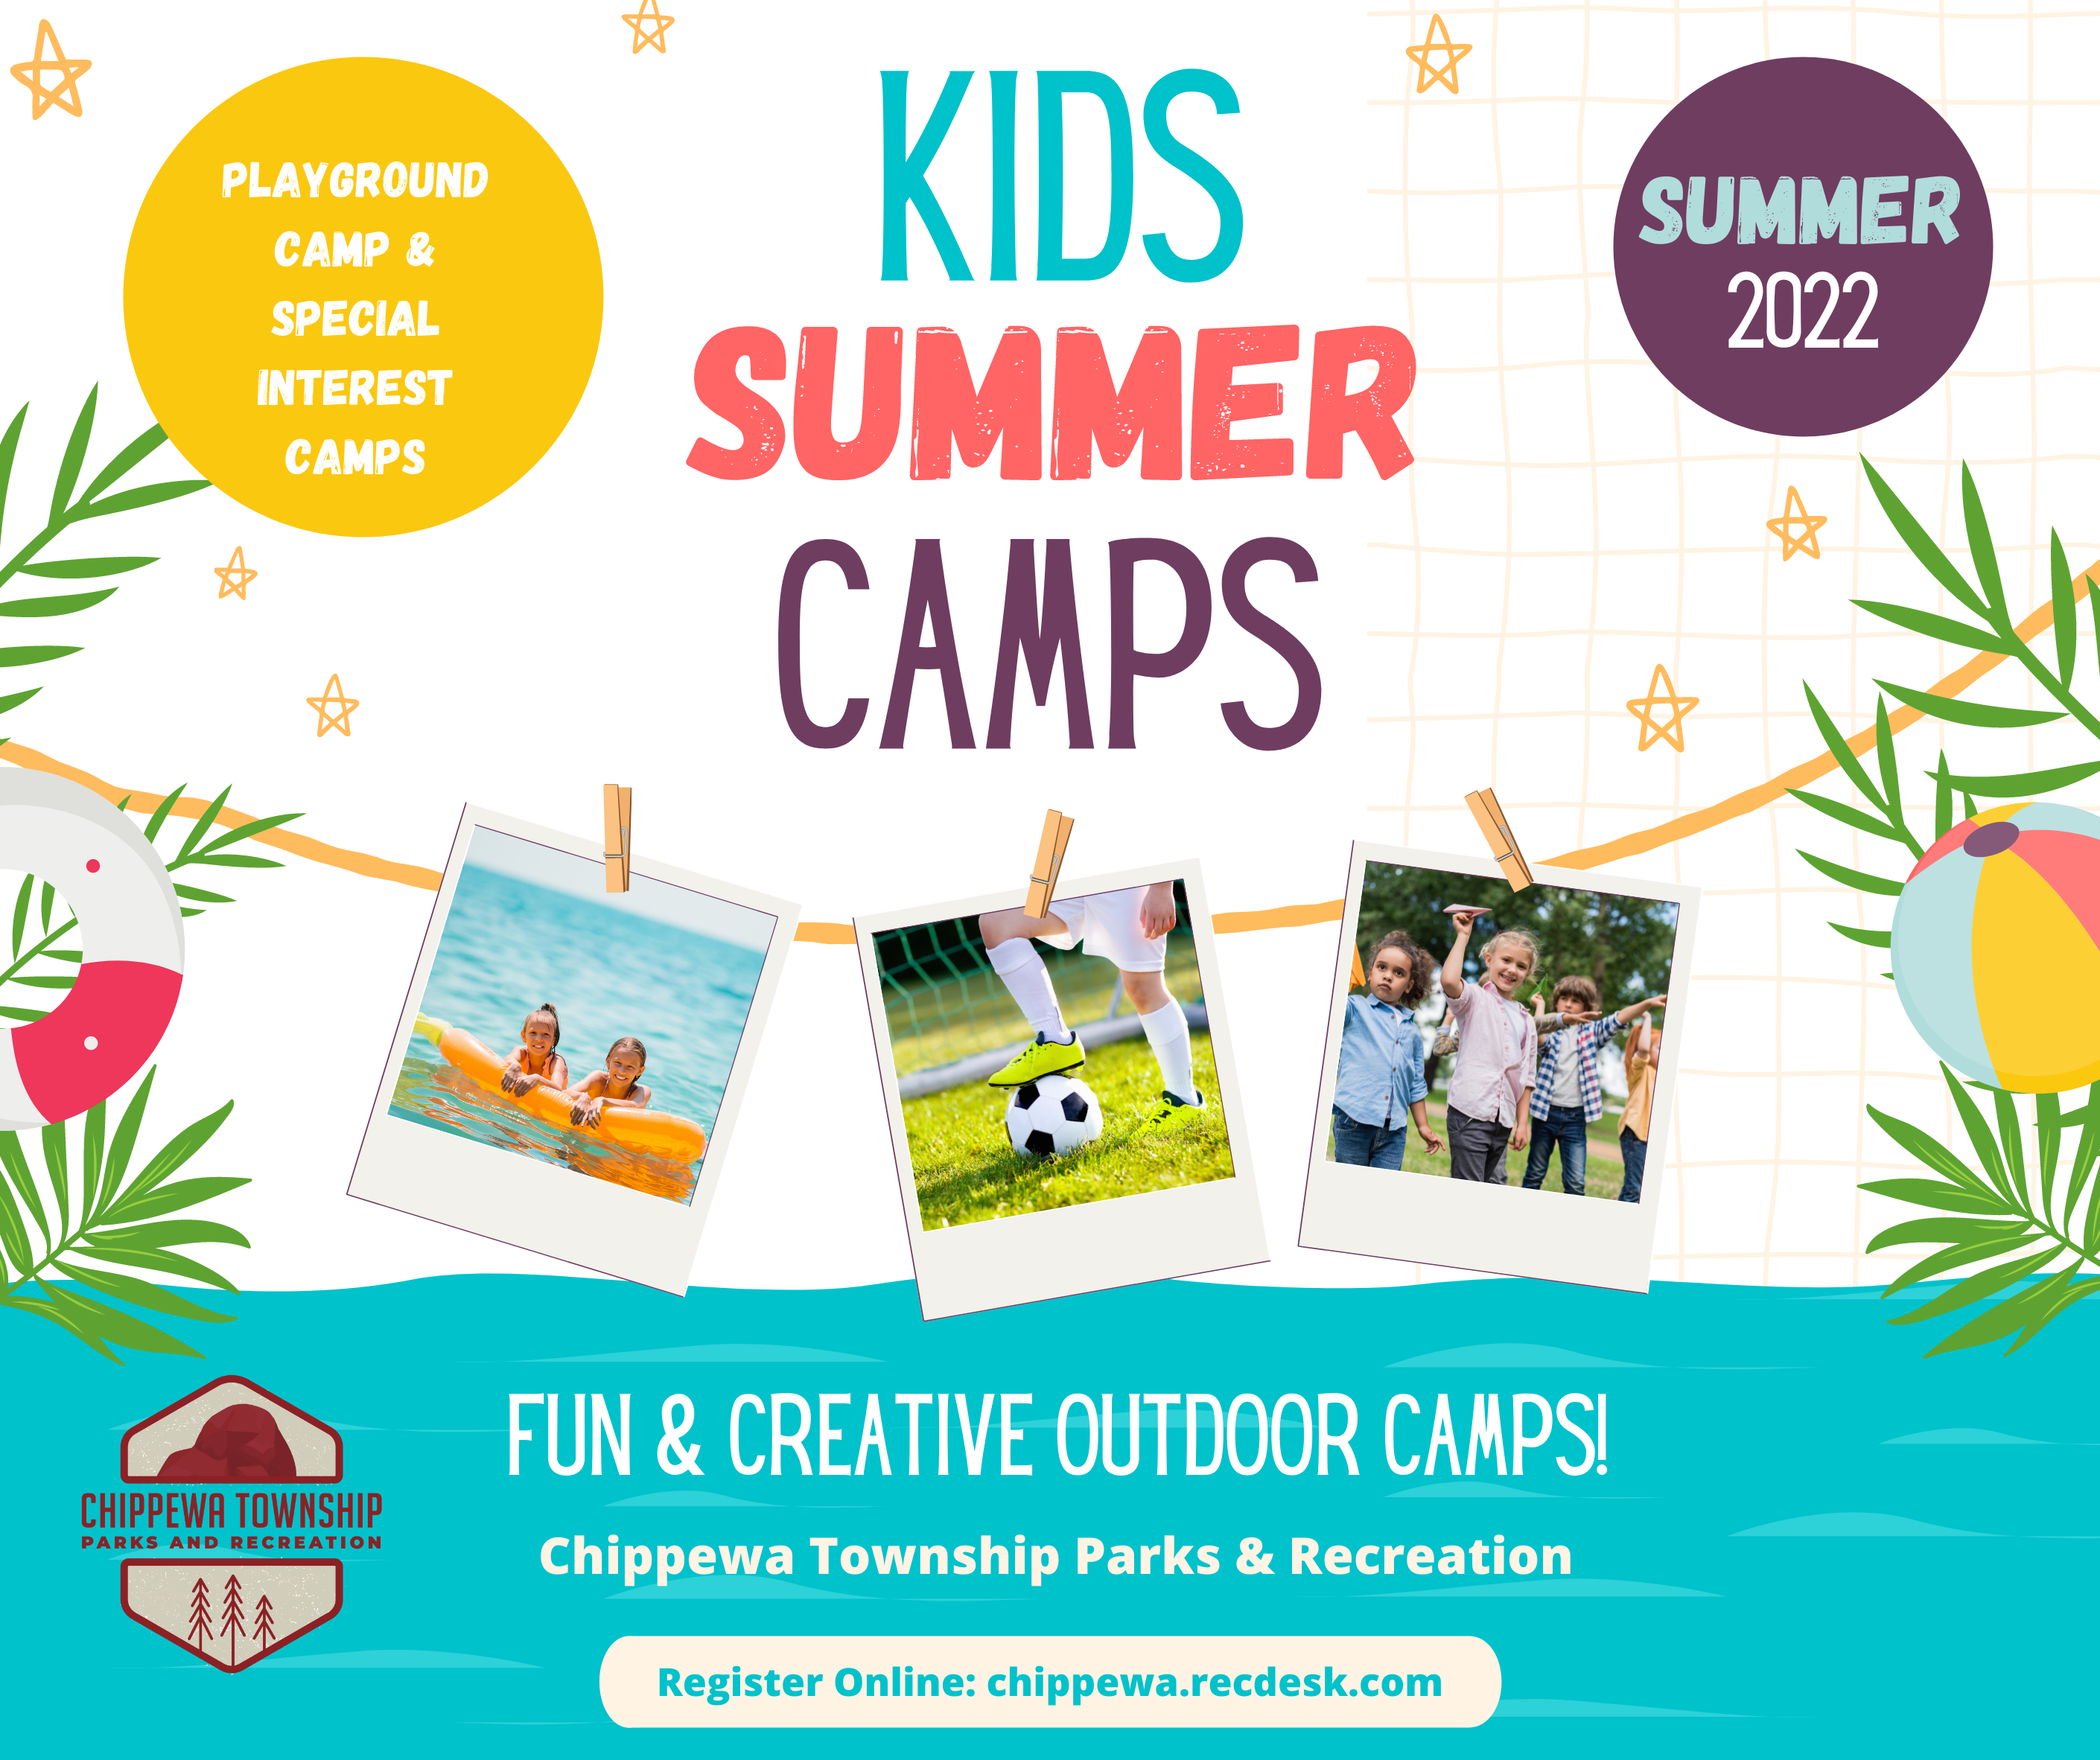 Kids Summer Camp Facebook Post | Chippewa Township